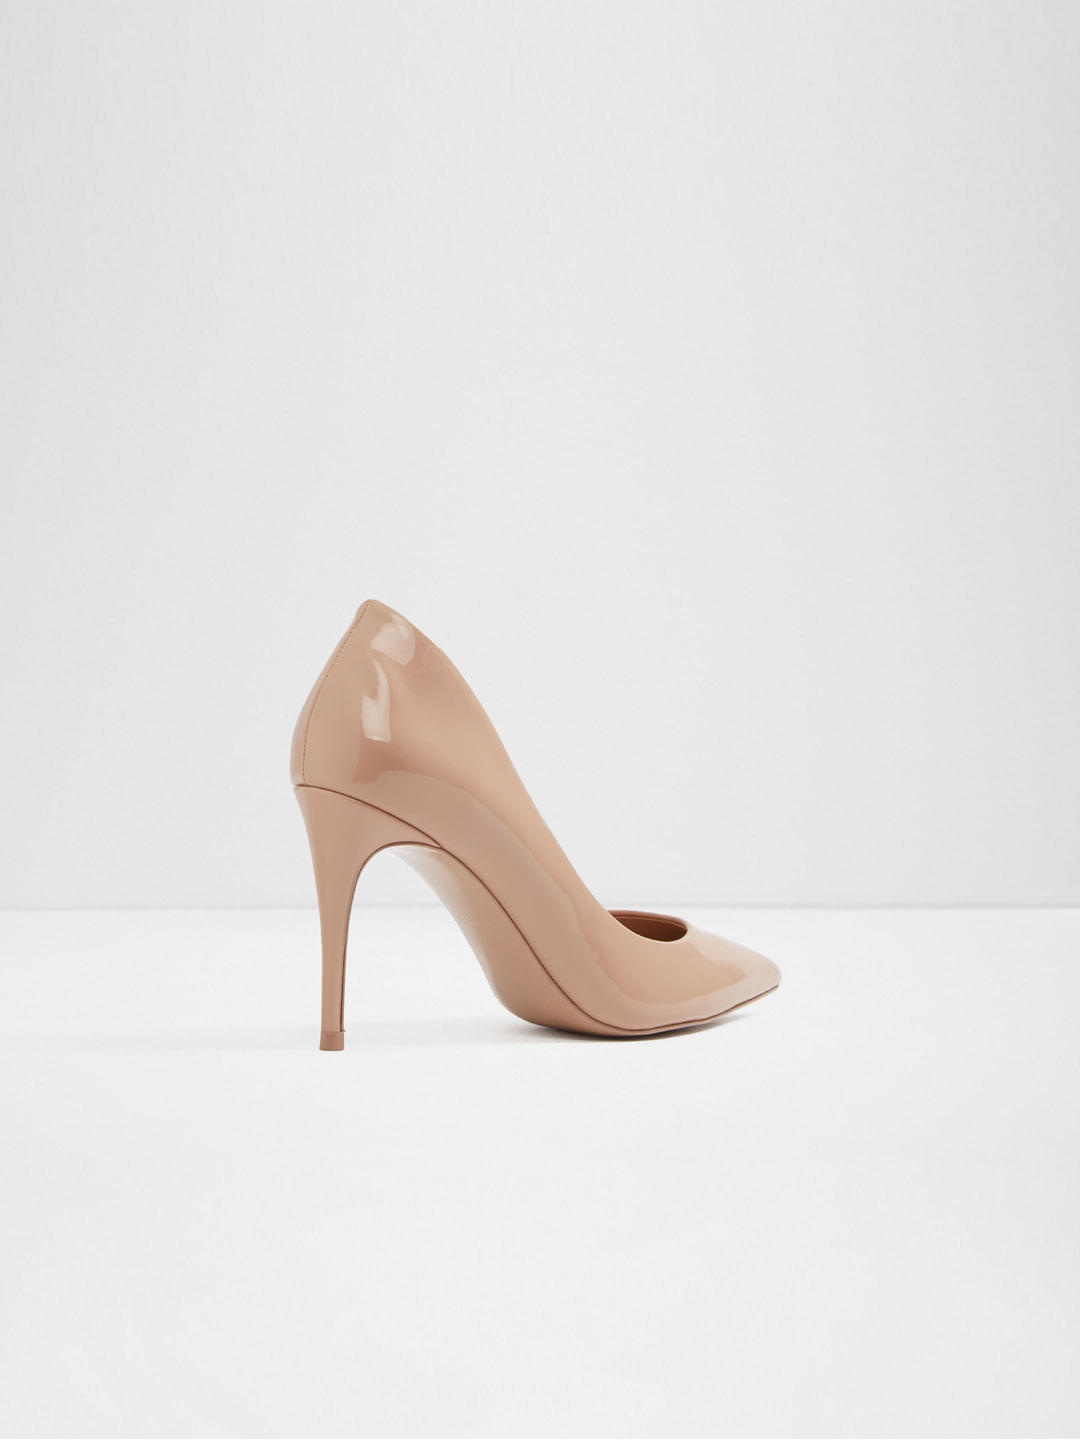 Buy Heels Online | Aldo shoes